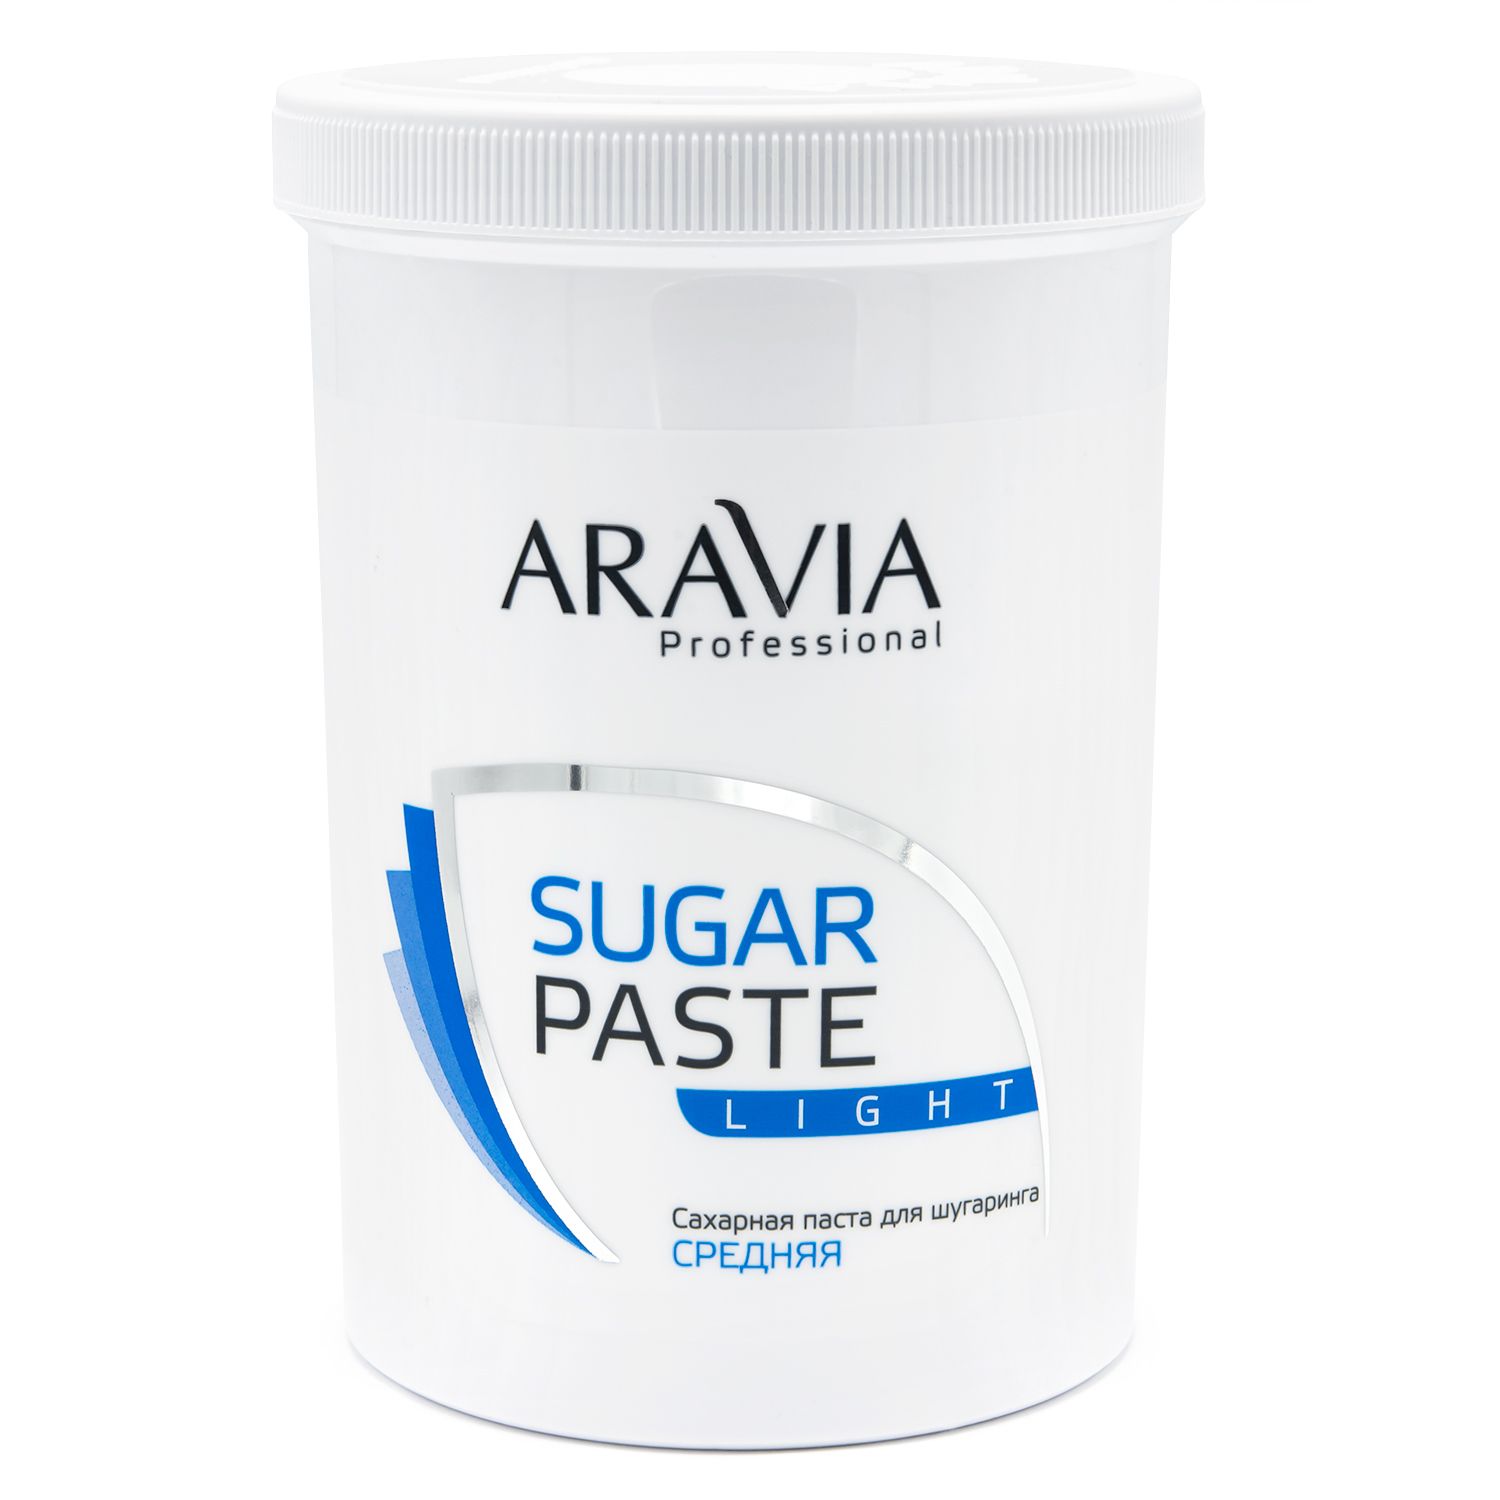 Aravia сахарная паста лайт не требует разогрева 1500г (р)